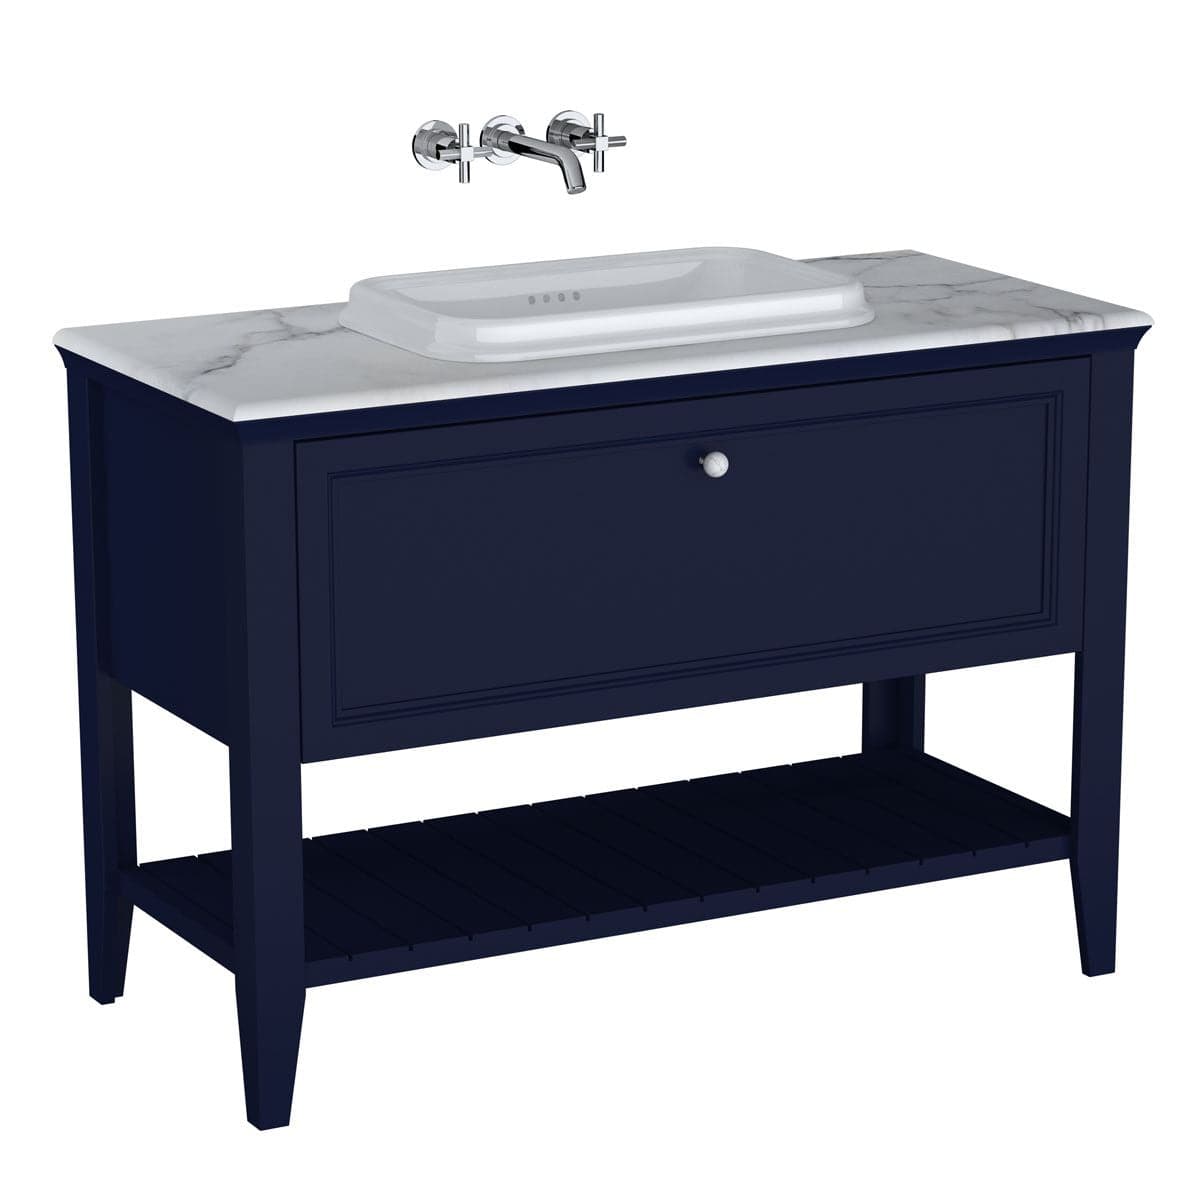 VitrA Valarte Set 118 cm Einbauwaschtisch + Waschtischunterschrank 1 Lade Stahlblau (Lack)